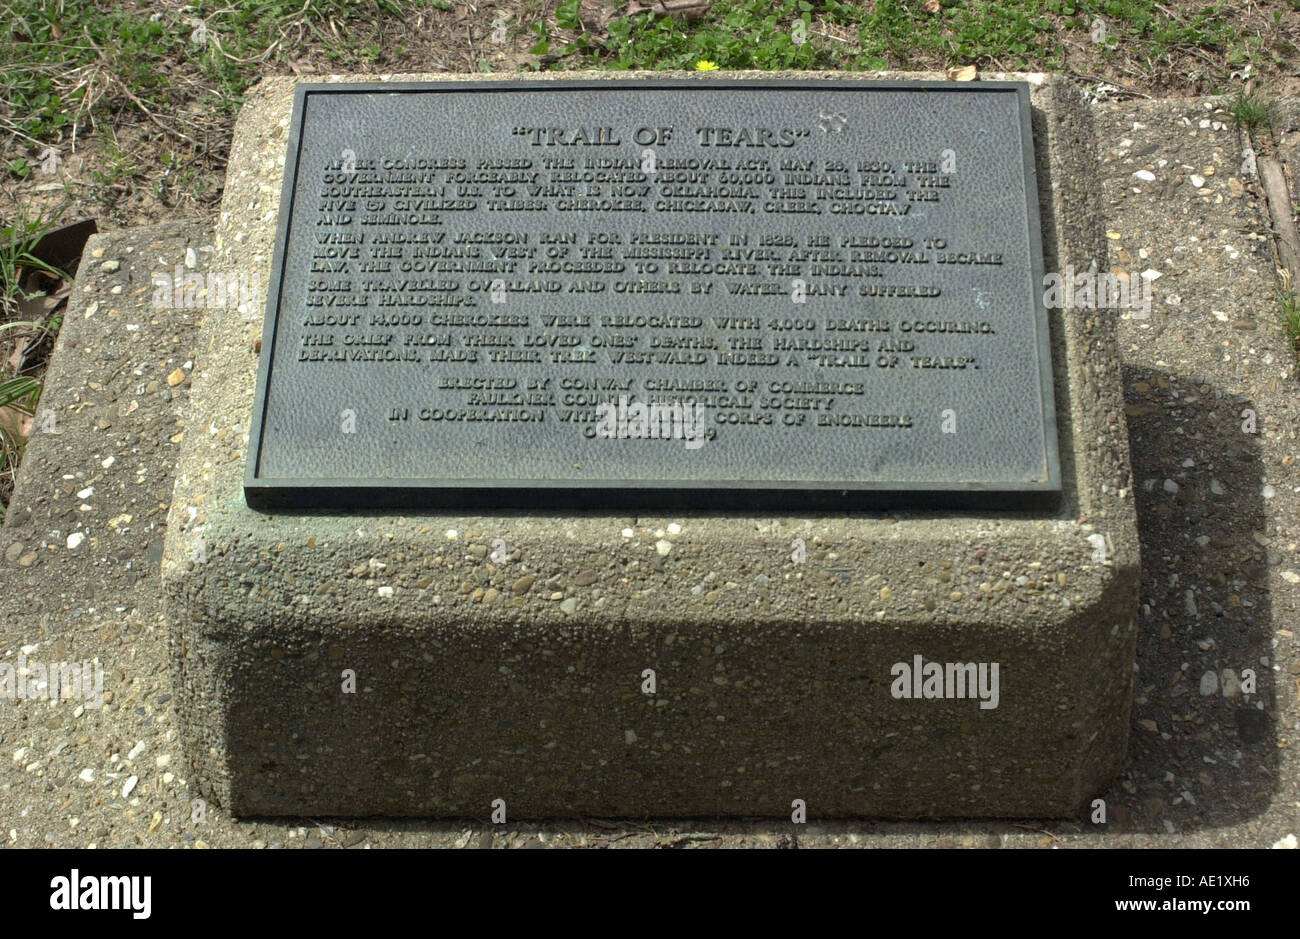 Cherokee Sentiero delle Lacrime memorial affacciato sul fiume Arkansas a Cadron Settlement Park di Conway Arkansas. Fotografia digitale Foto Stock